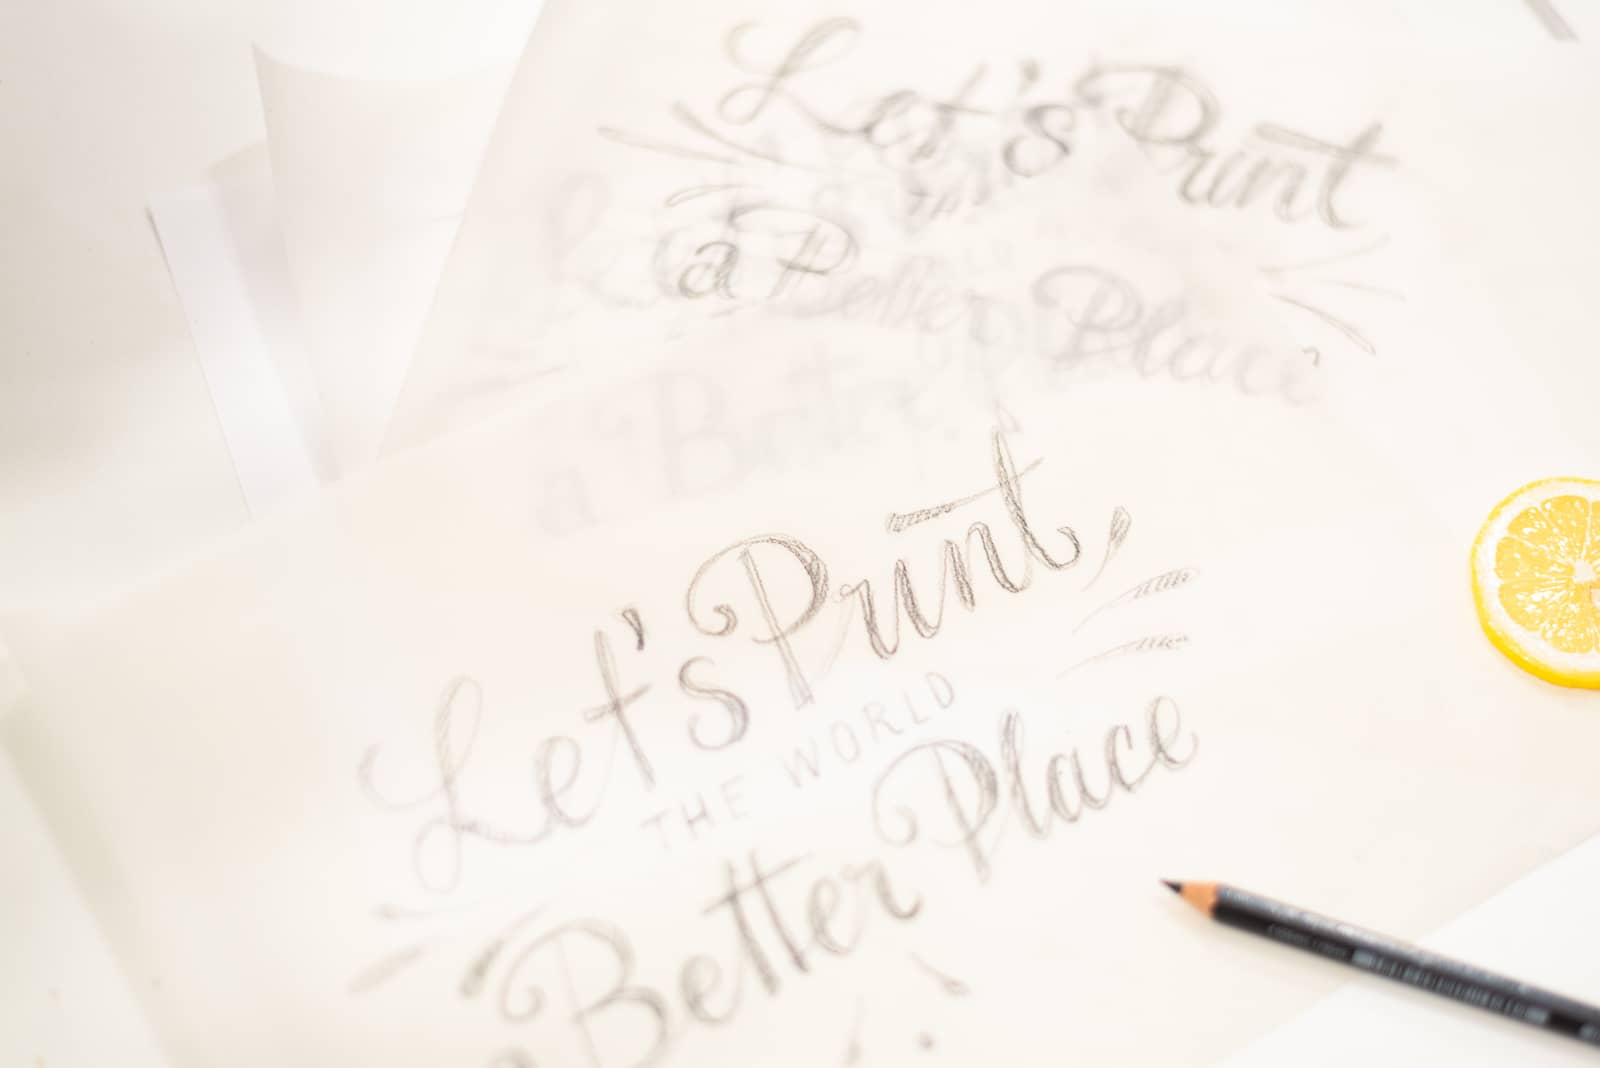 Transparentpapiere mit verschiedenen Schriftentwürfen, die den Schriftzug »Let’s Print the World a Better Place« zeigen. Daneben liegt ein Schreibwerkzeug und eine Zitronenscheibe.